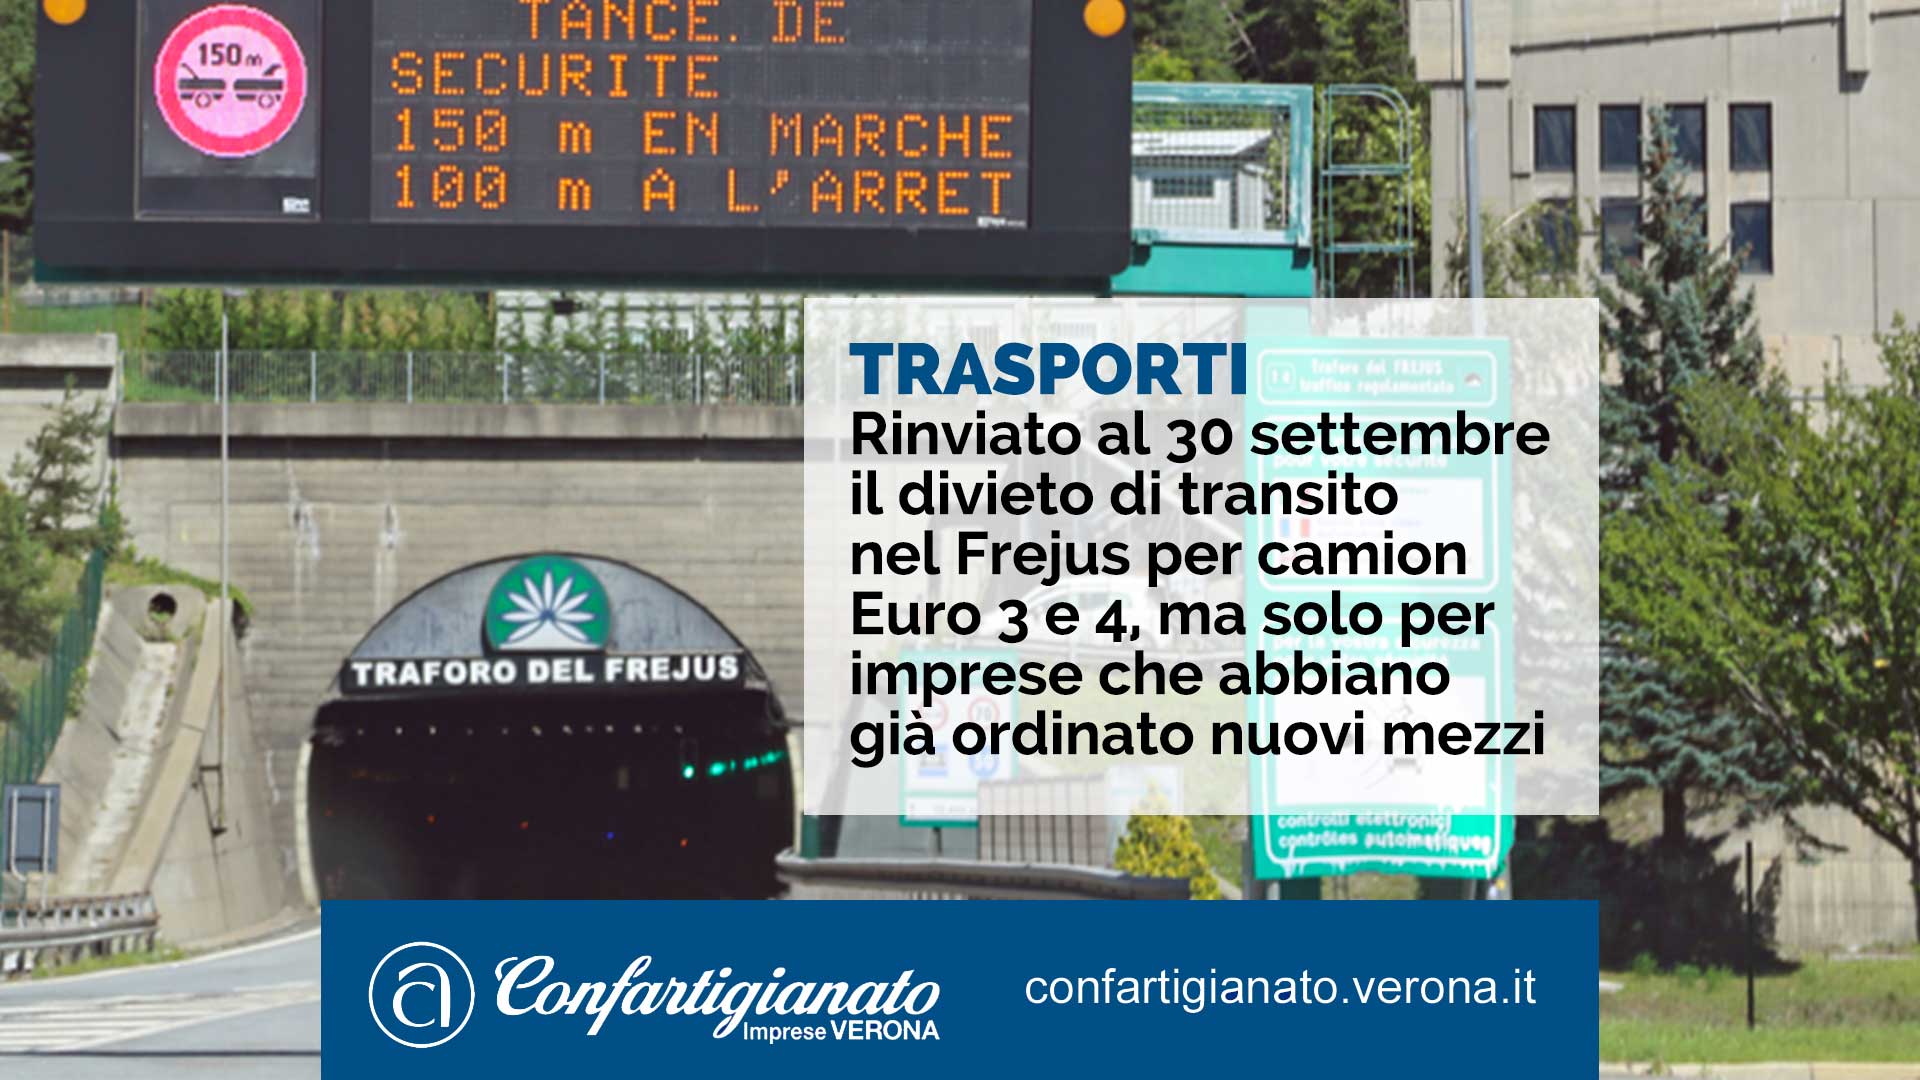 Rinviato al 30 settembre il divieto di transito nel Frejus per camion Euro 3 e 4, ma solo per imprese che abbiano già ordinato nuovi mezzi